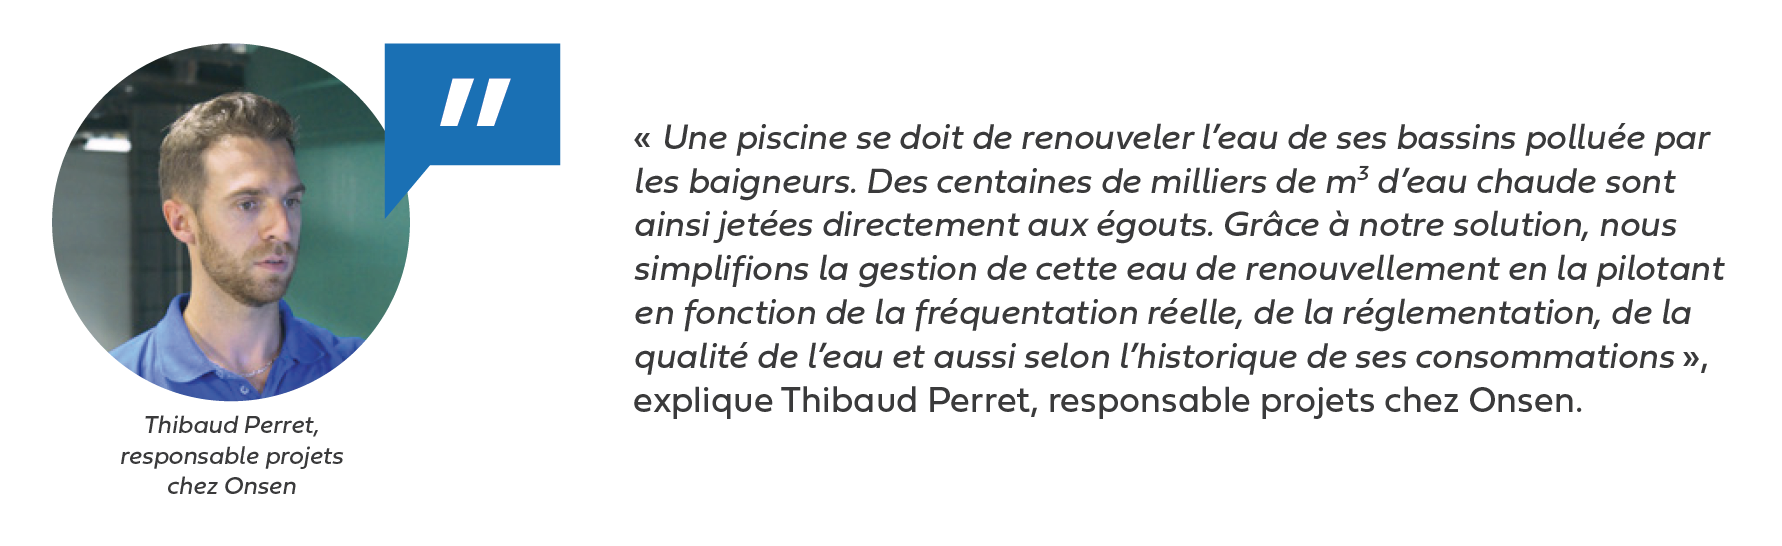 Thibaud Perret-piscine